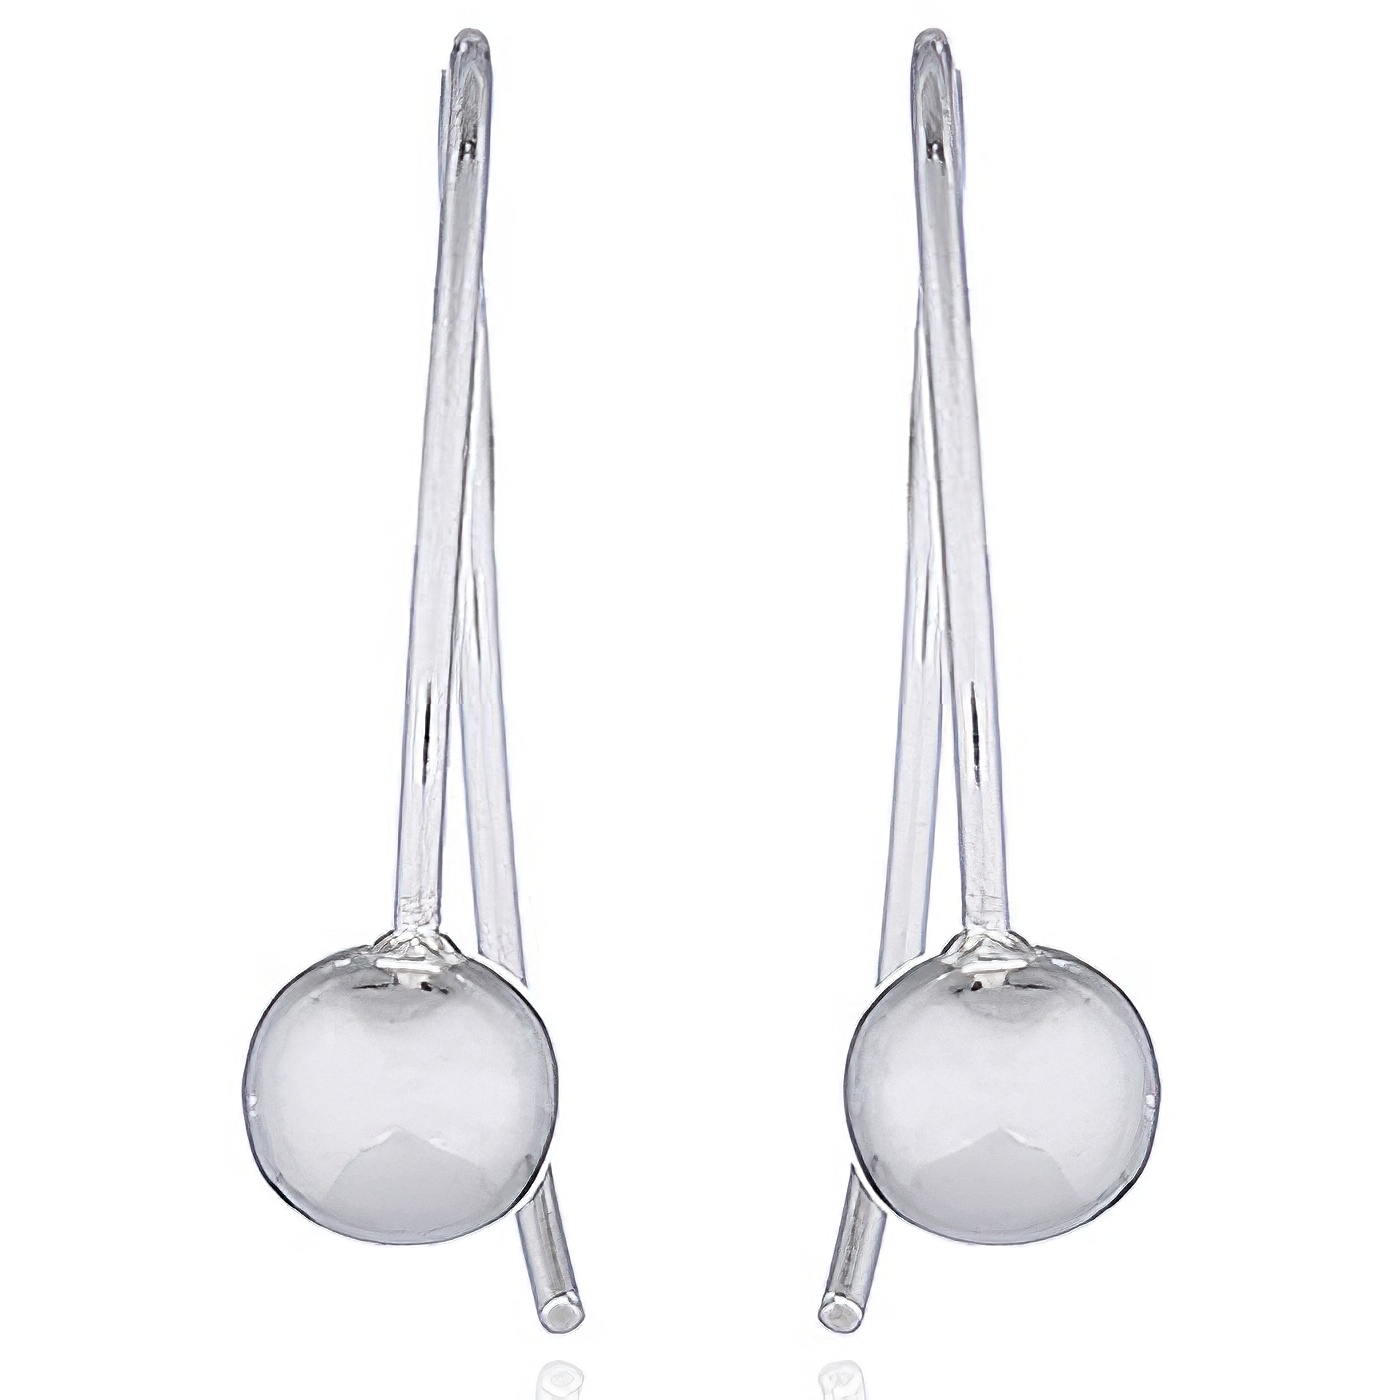 Sphere On Loop Wire Sterling Silver Drop Earrings by BeYindi 